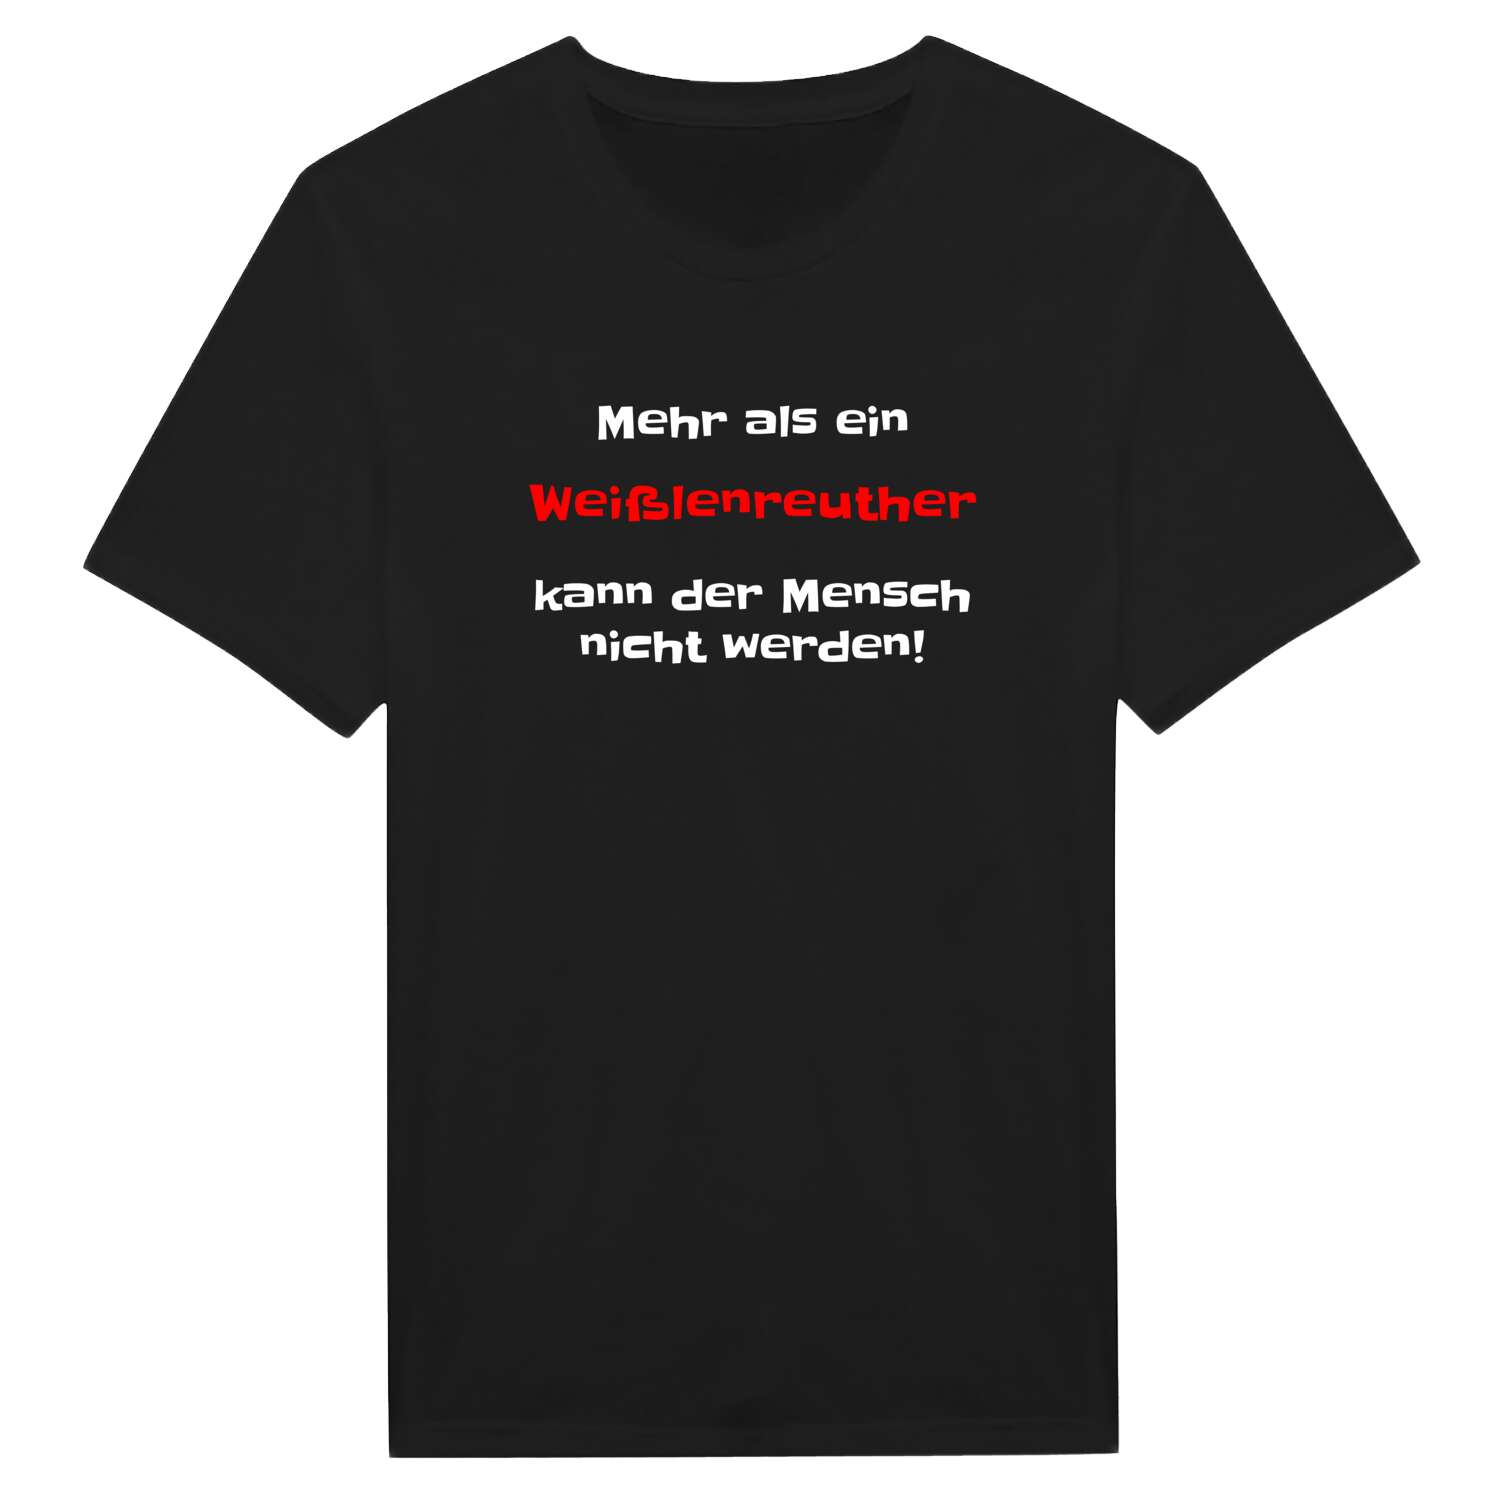 Weißlenreuth T-Shirt »Mehr als ein«